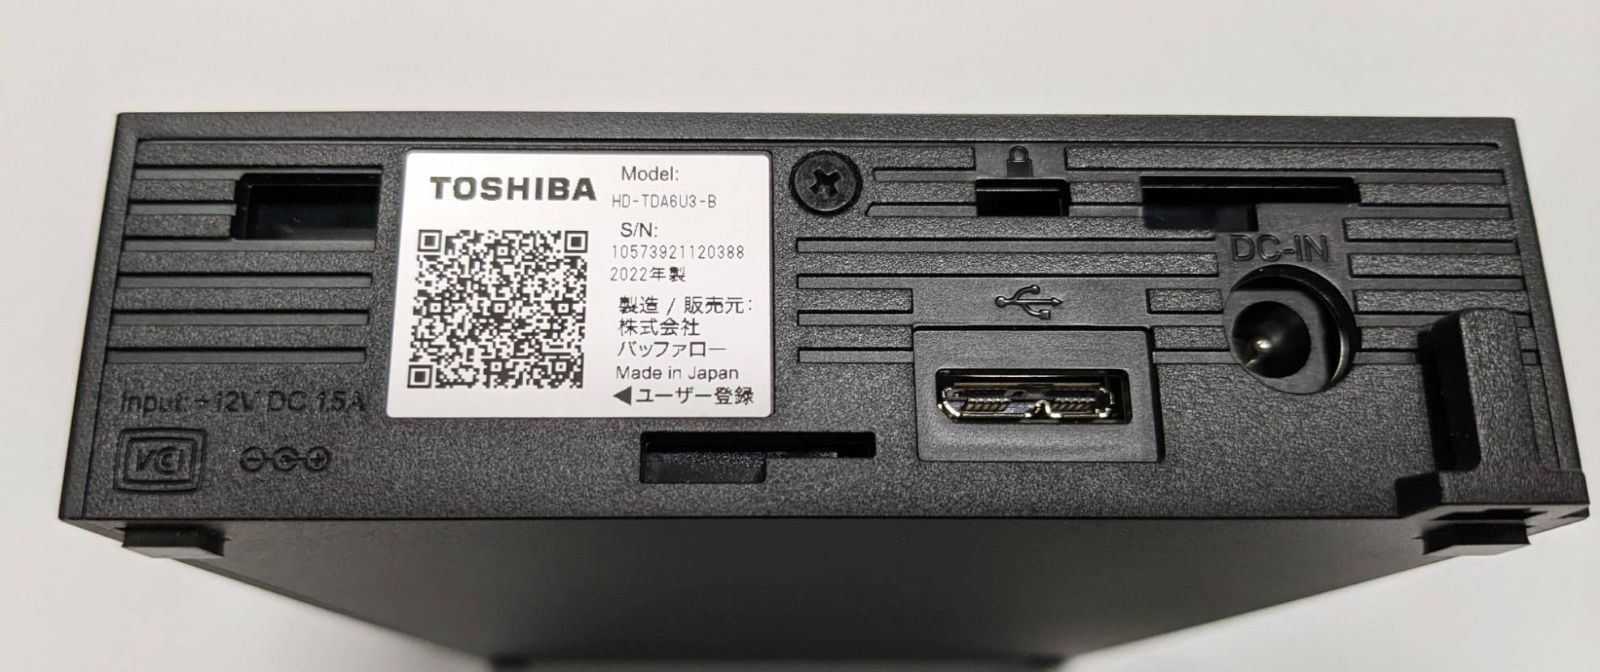 PCタブレット東芝 外付け ハードディスク 6TB HD-TDA6U3-B/N